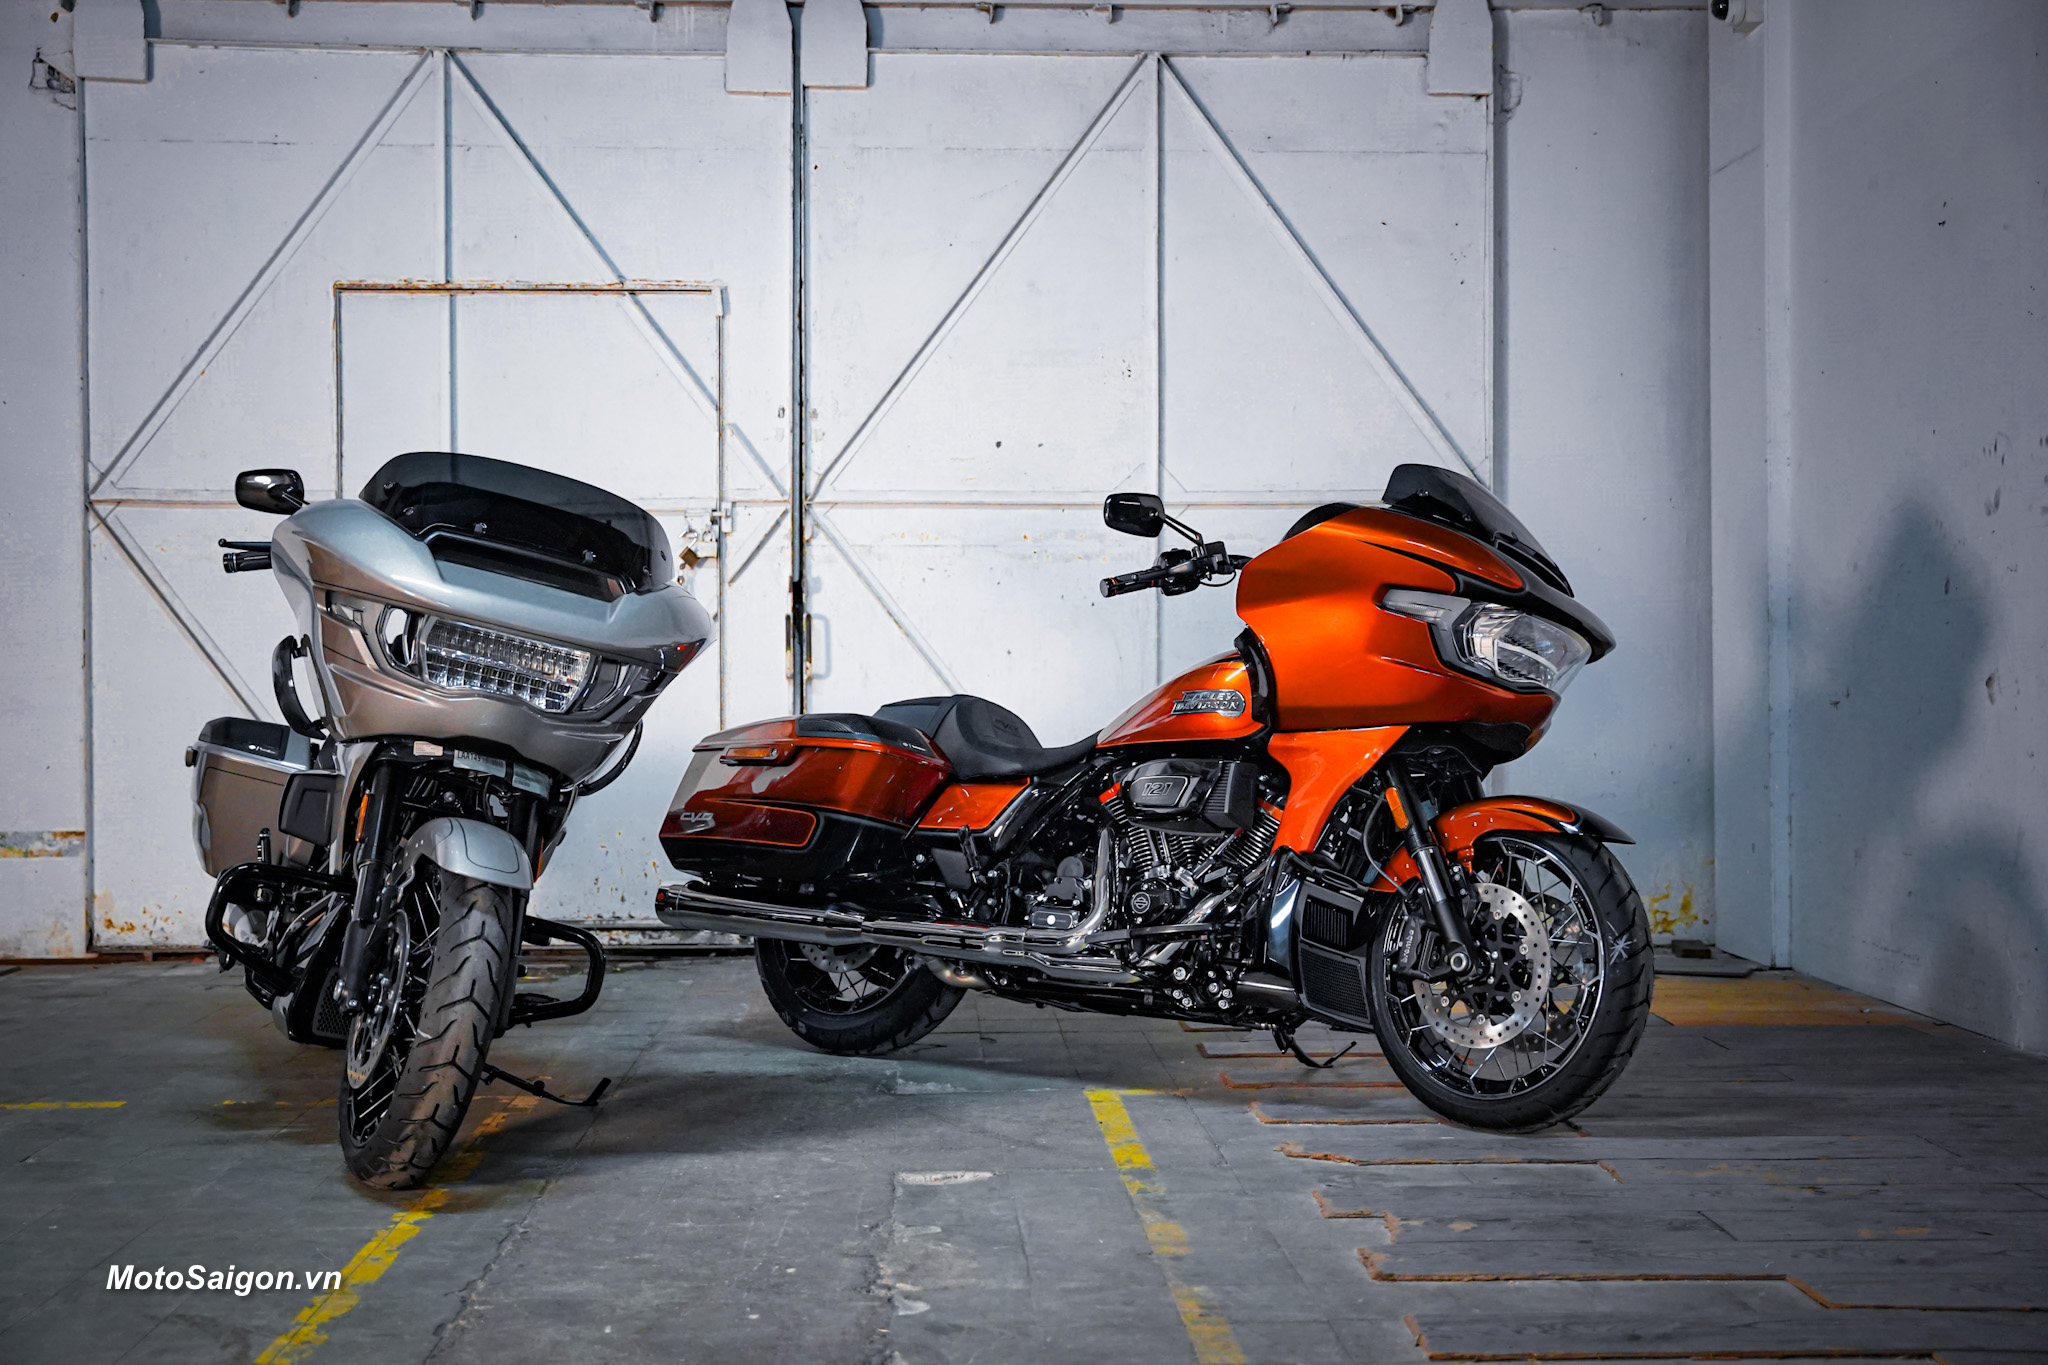 Giá xe CVO thế hệ mới chính thức được Harley Davidson Việt Nam công bố